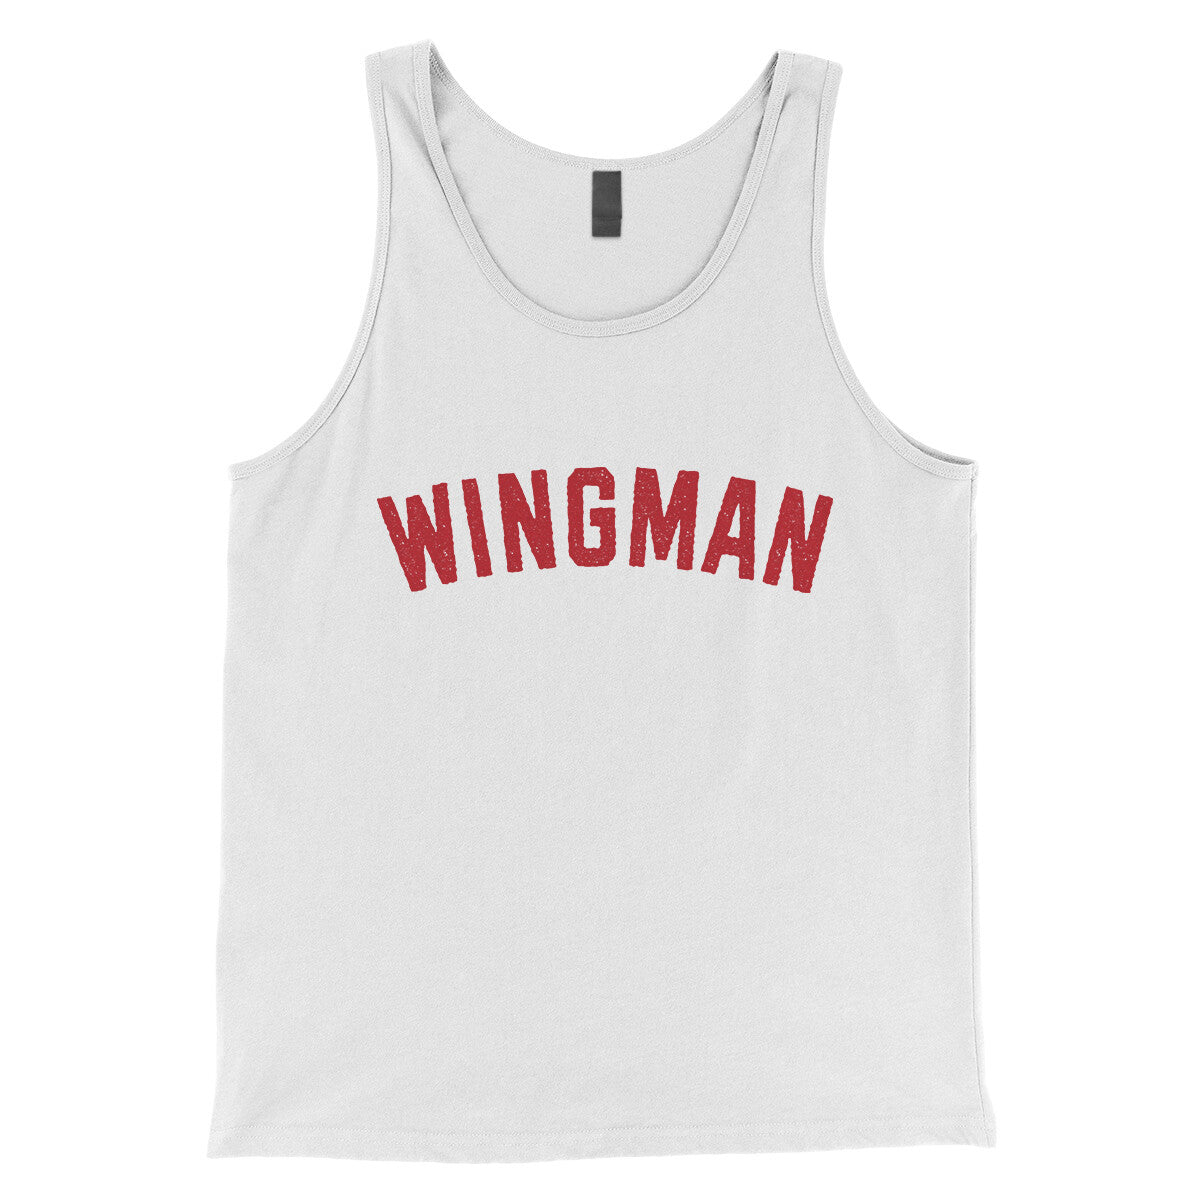 Wingman in White Color